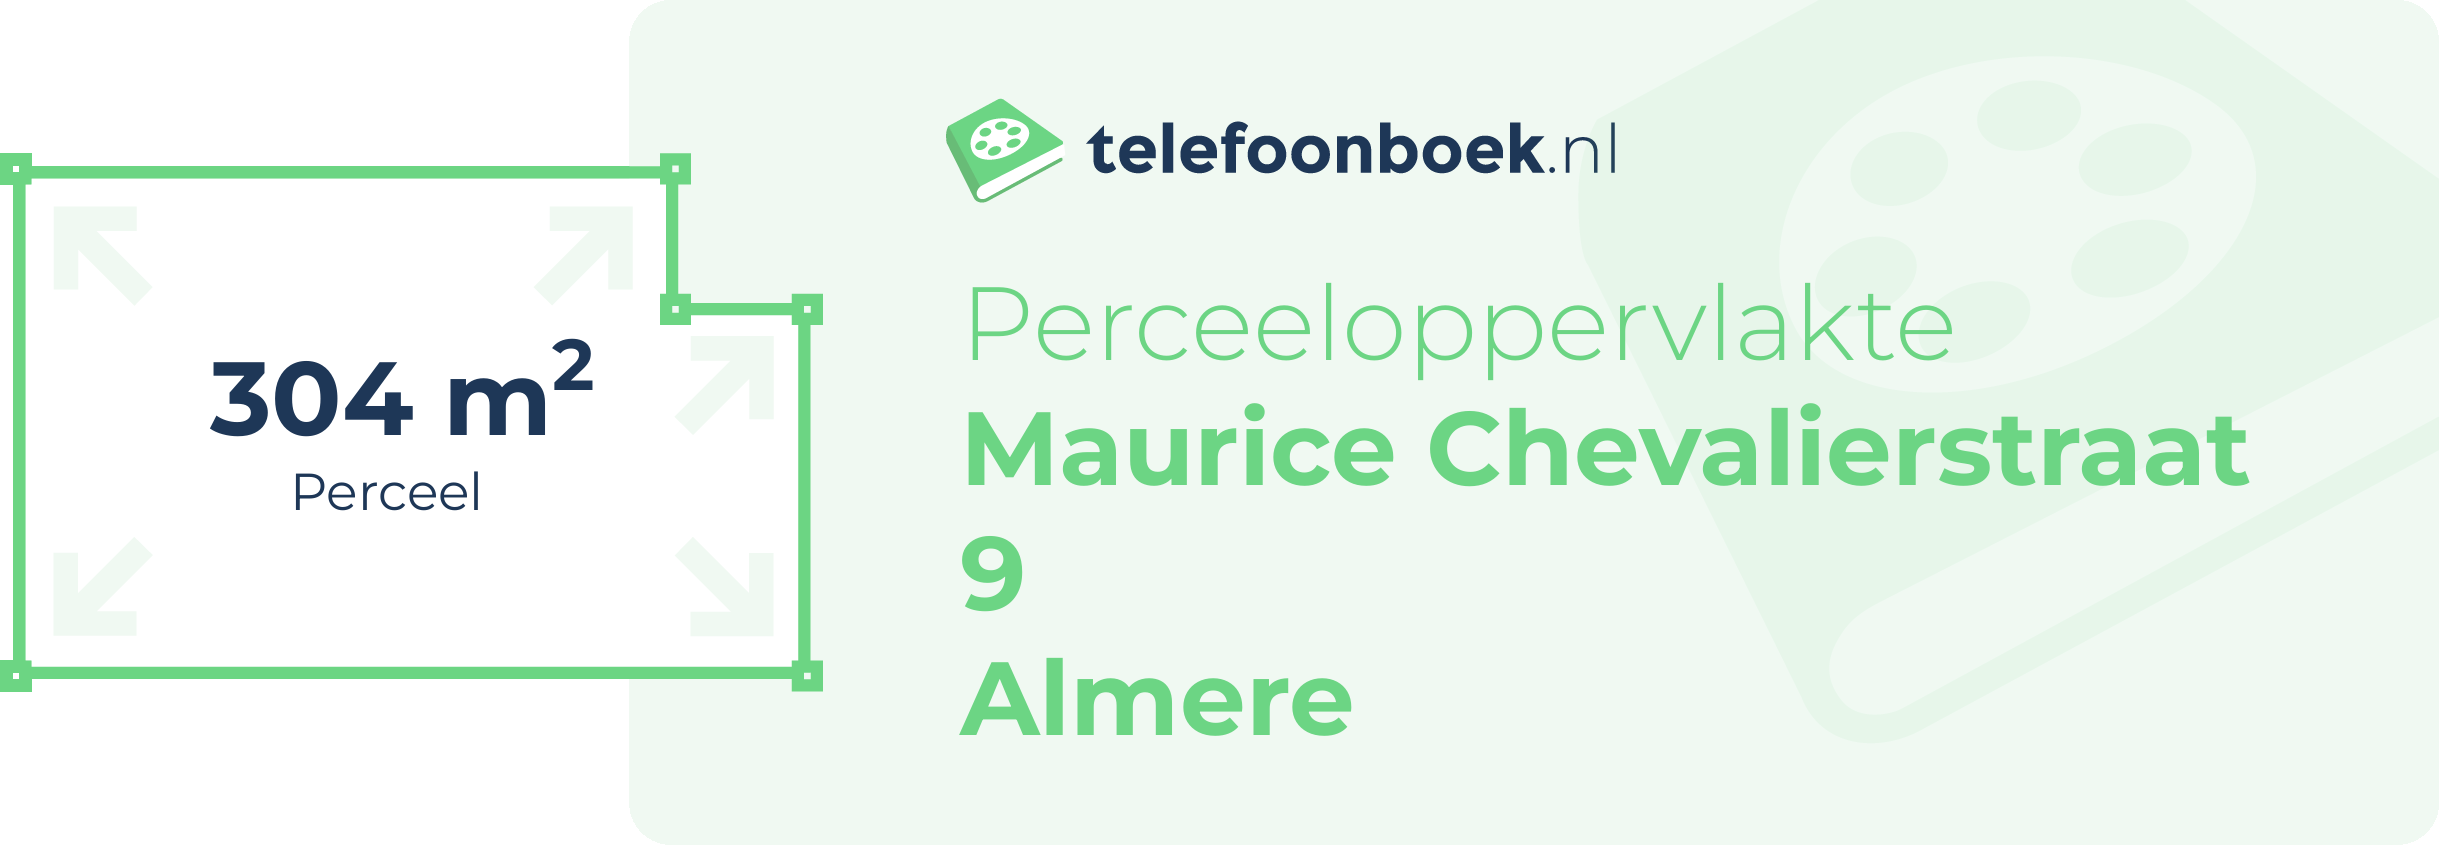 Perceeloppervlakte Maurice Chevalierstraat 9 Almere